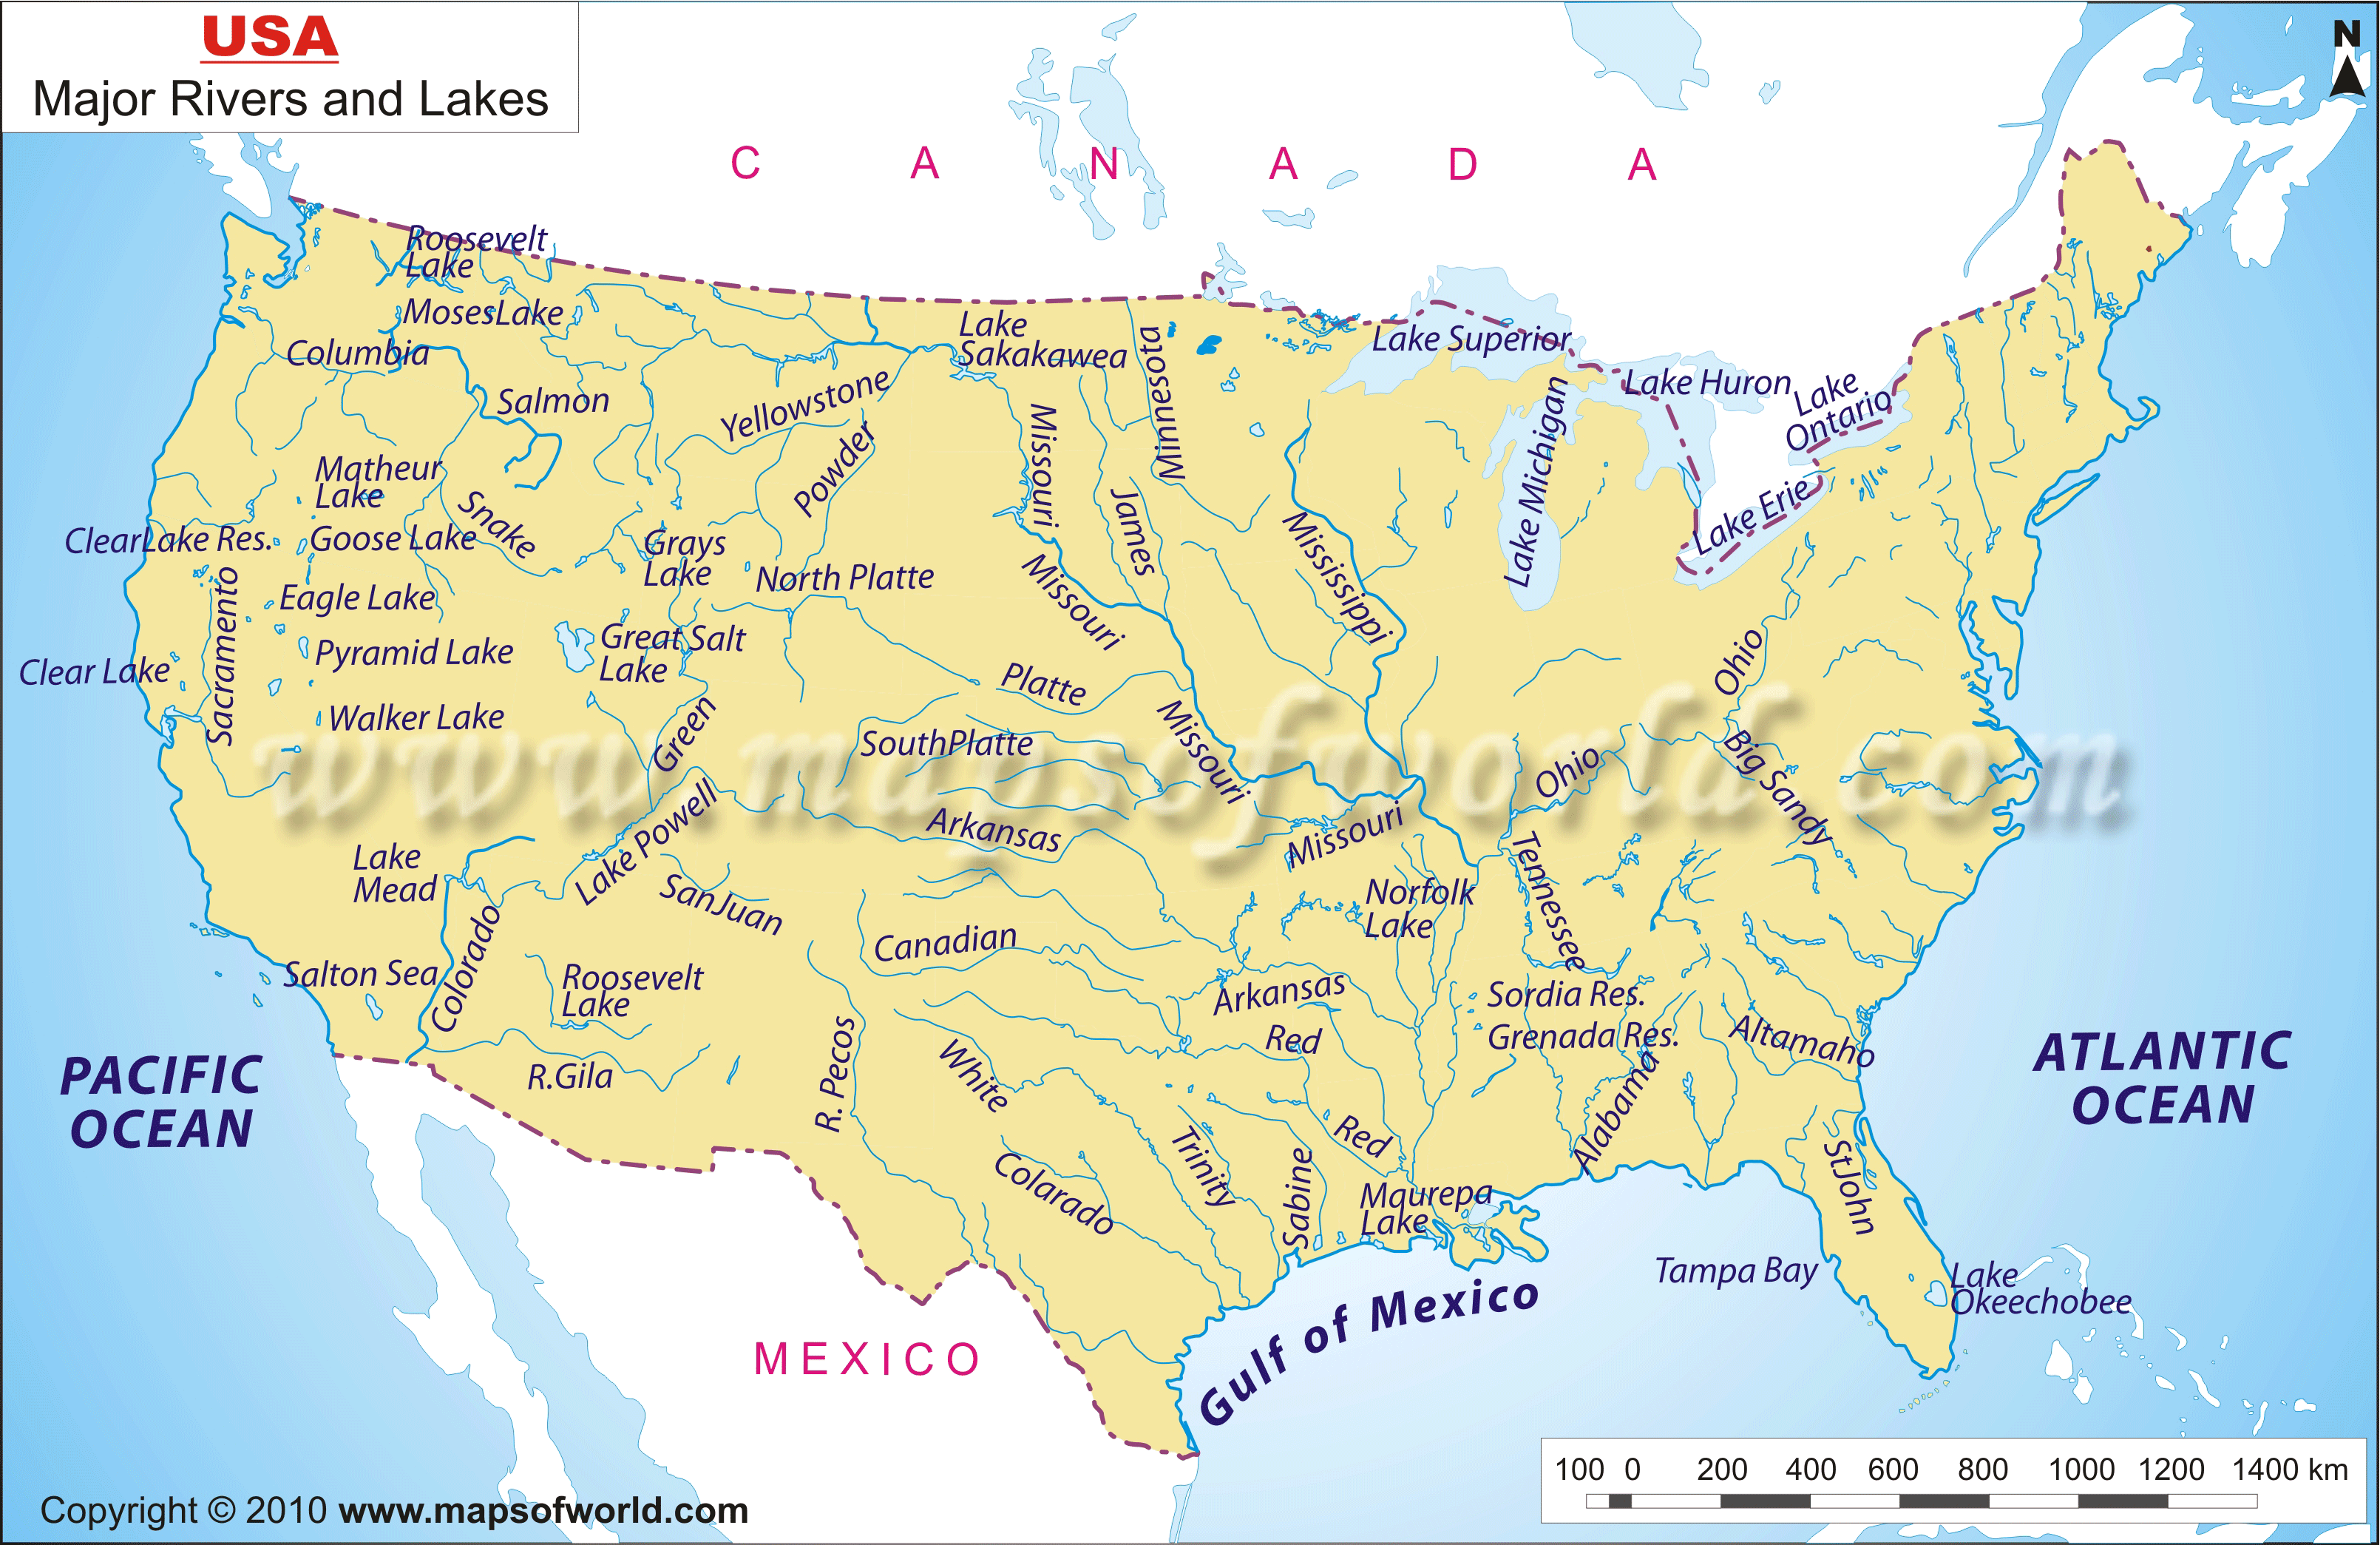 Hudson river map. Крупные реки и озера США на карте. Карта Америки с реками и озерами. Реки США на карте. Крупные реки США на карте.